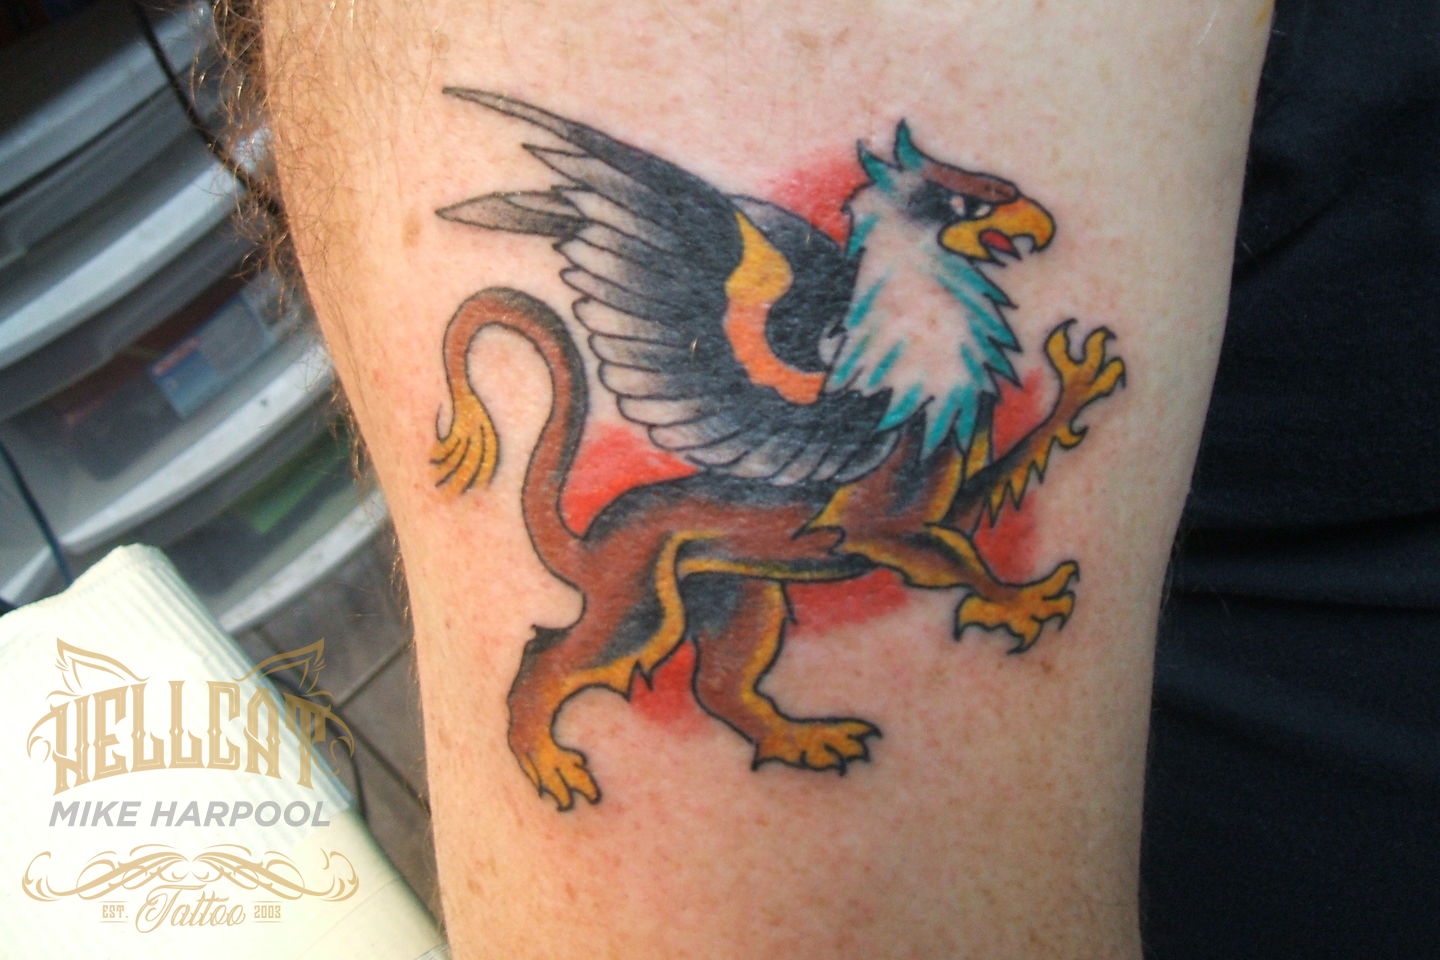 My Griffin Tattoo vol II by VolvoPower86 on DeviantArt